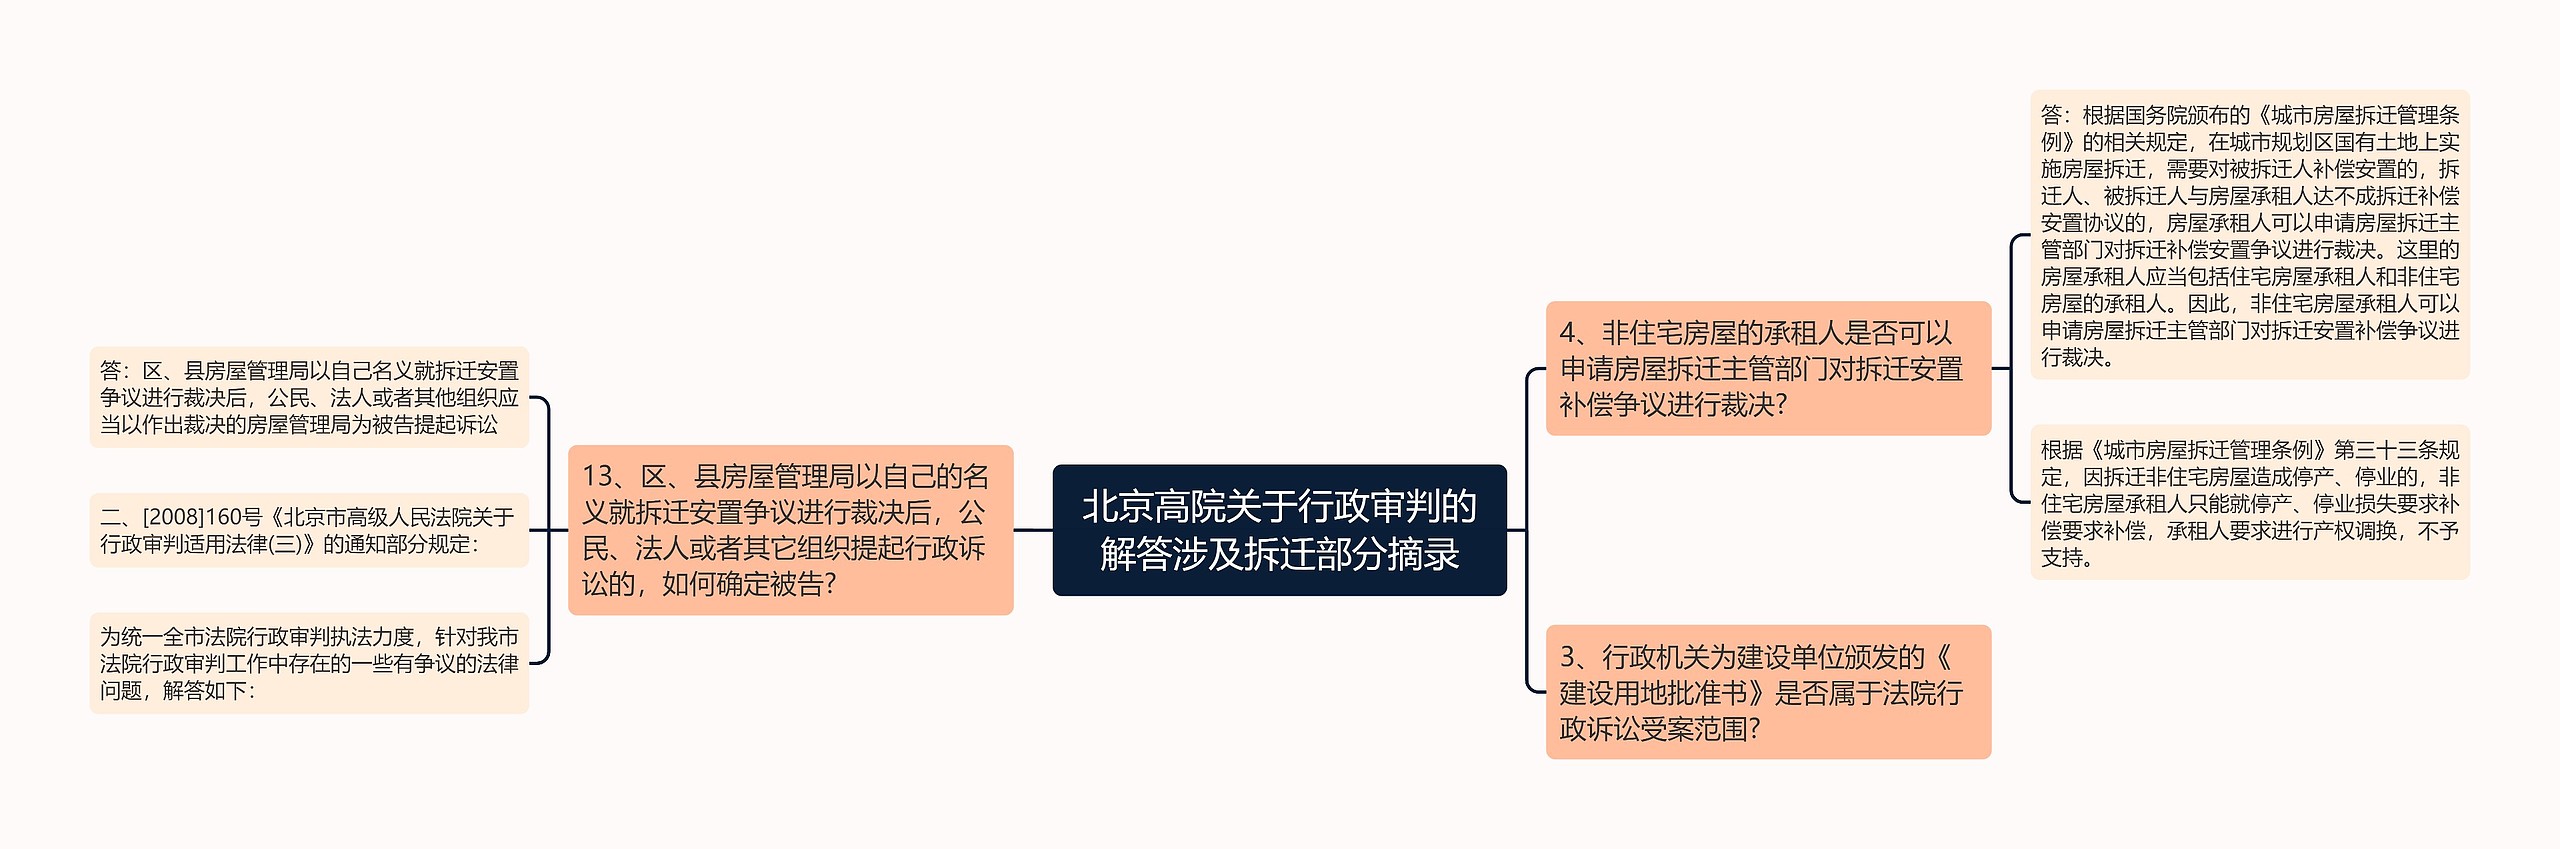 北京高院关于行政审判的解答涉及拆迁部分摘录思维导图